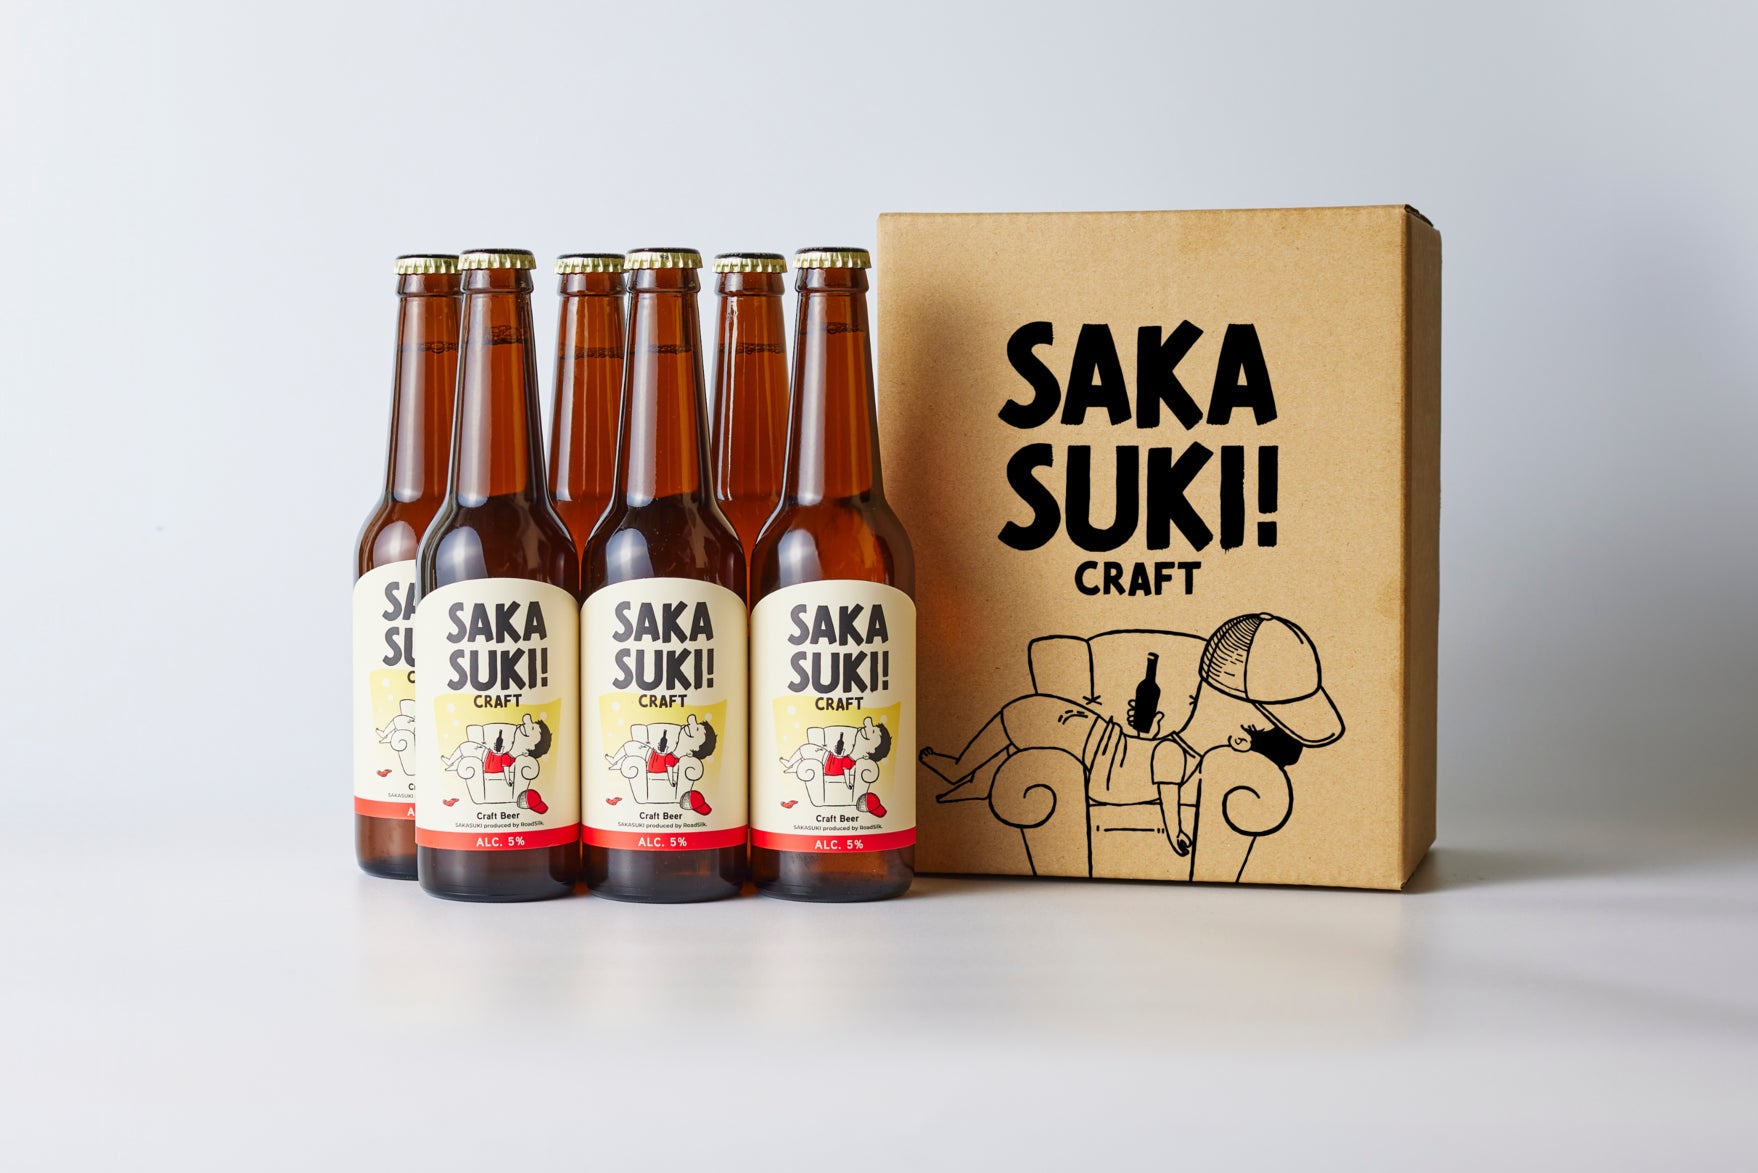 「フィッシャーズ」シルクロードがプロデュースのクラフトビールブランド「SAKASUKI」をローンチ！〜 UUUMとAnyMind 提携による D2Cブランド企画 〜